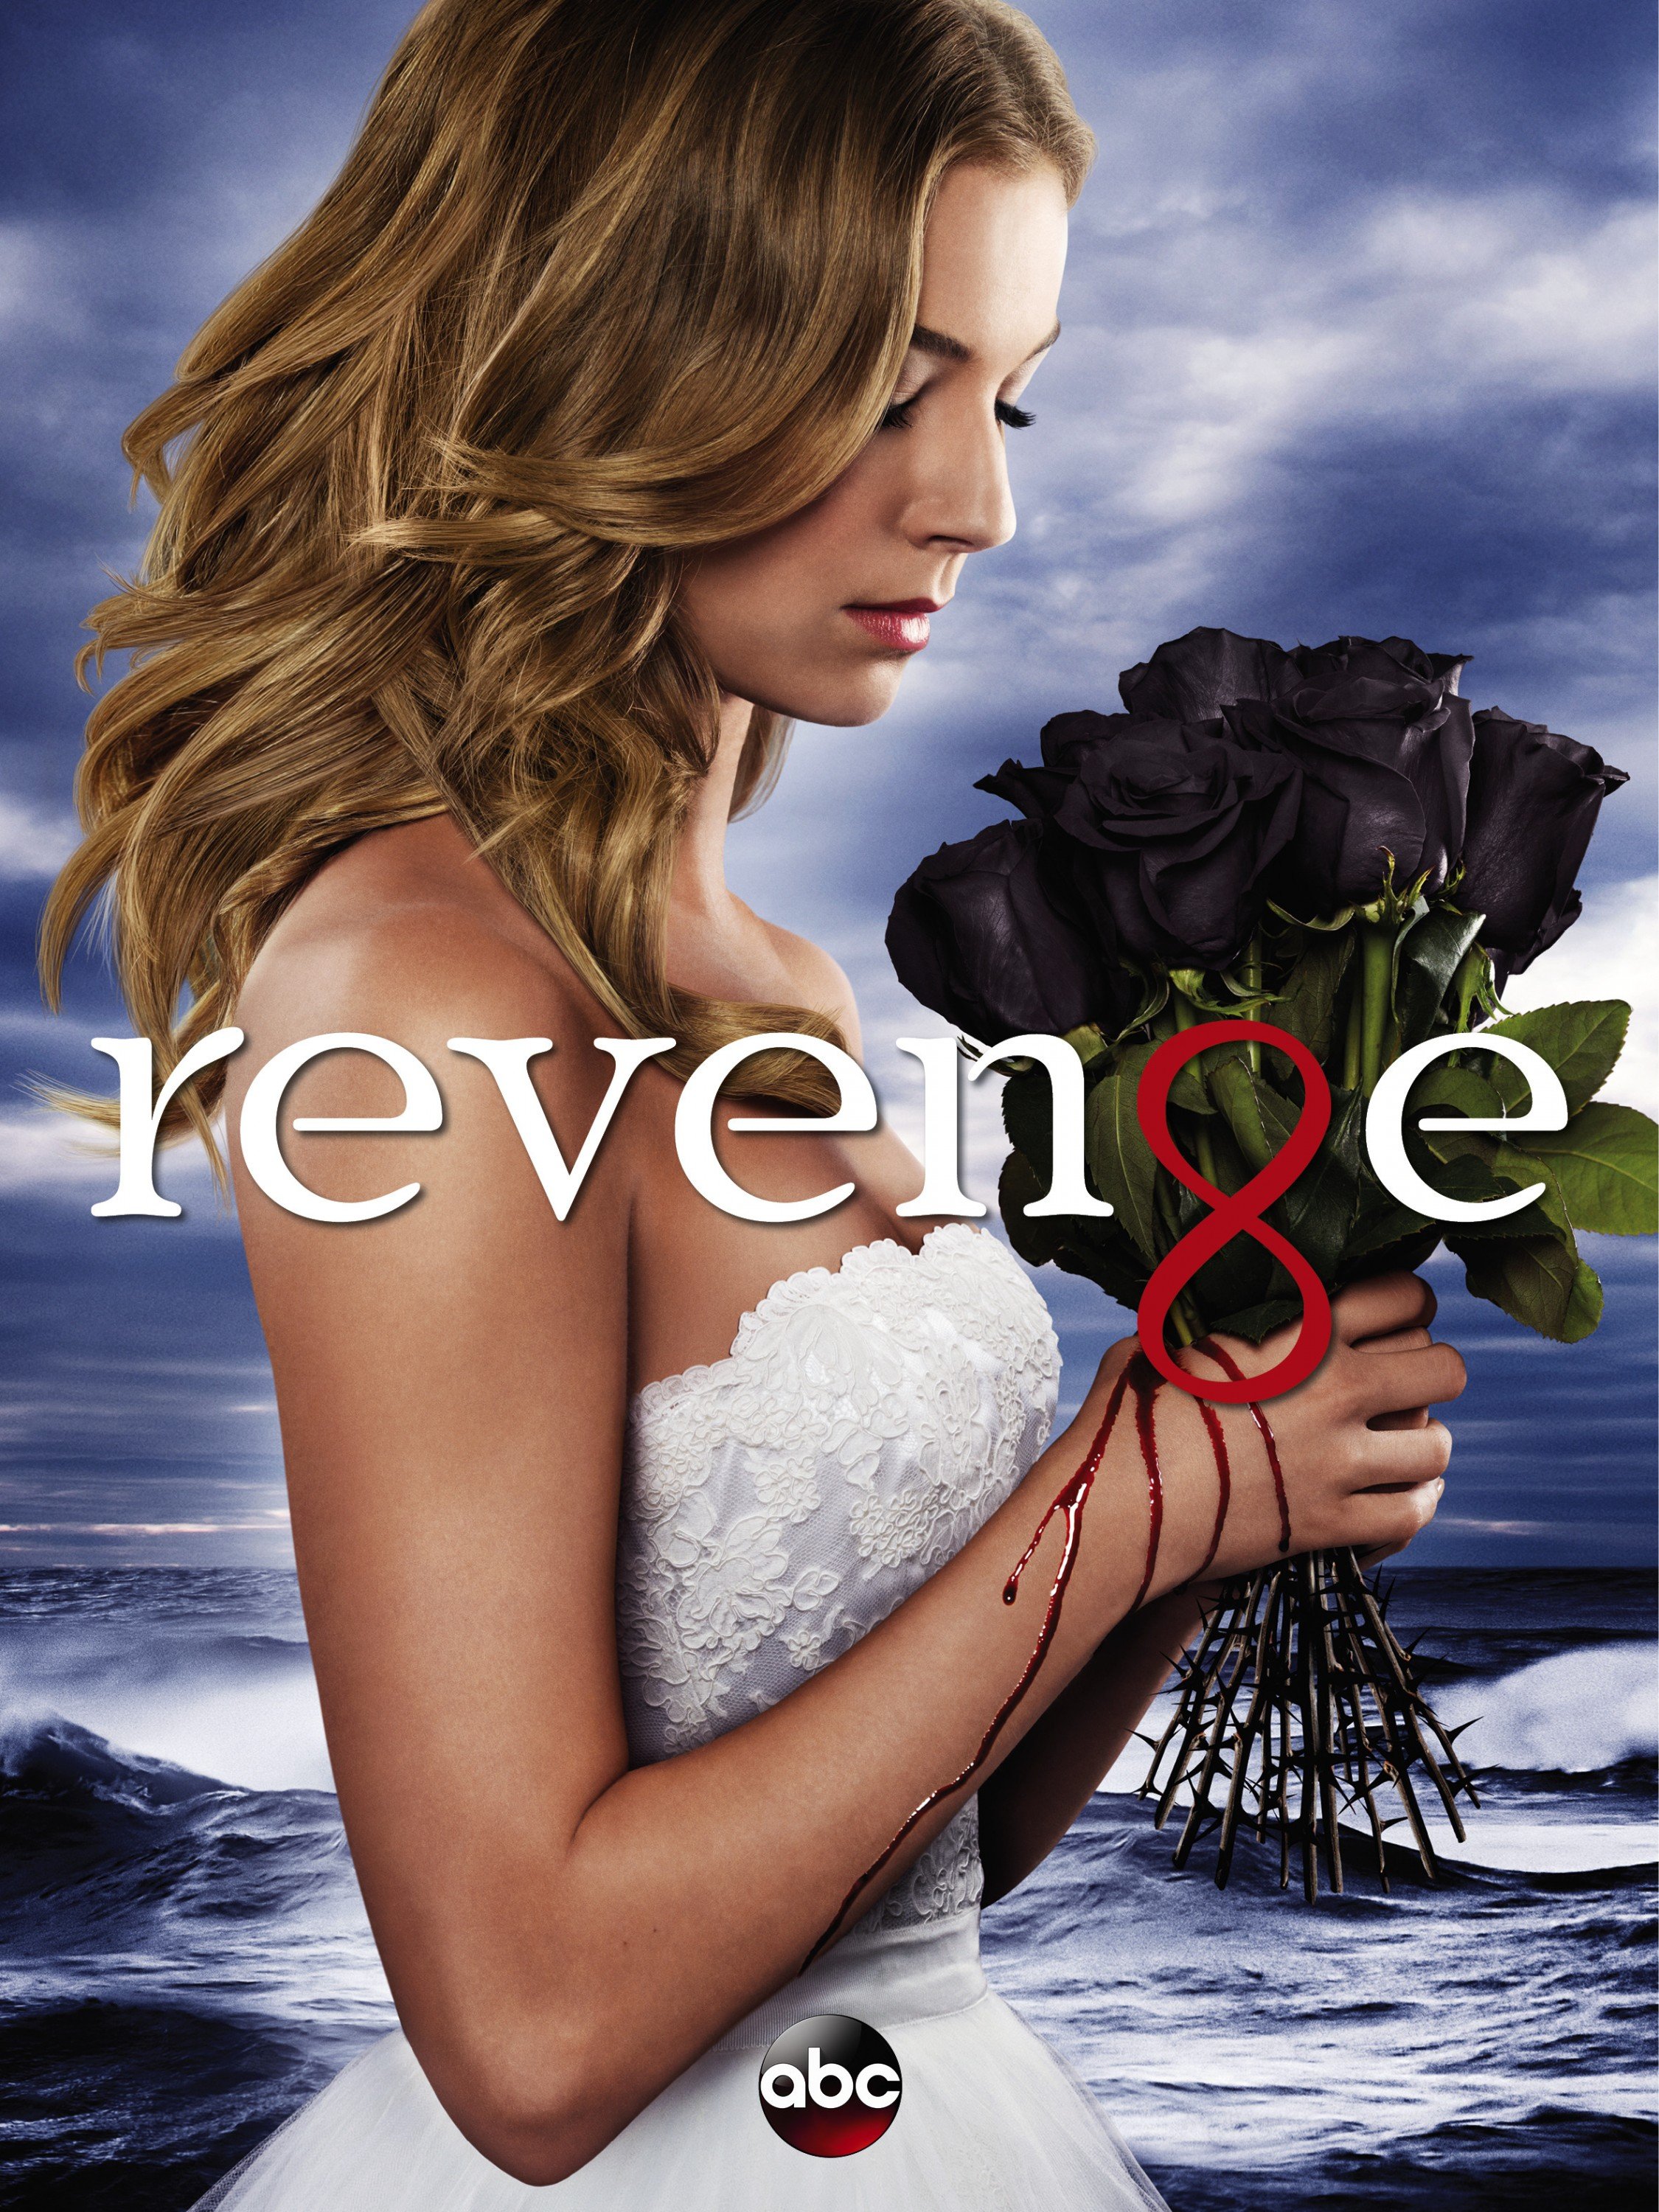 შურისძიება სეზონი 3 / Revenge Season 3 ქართულად